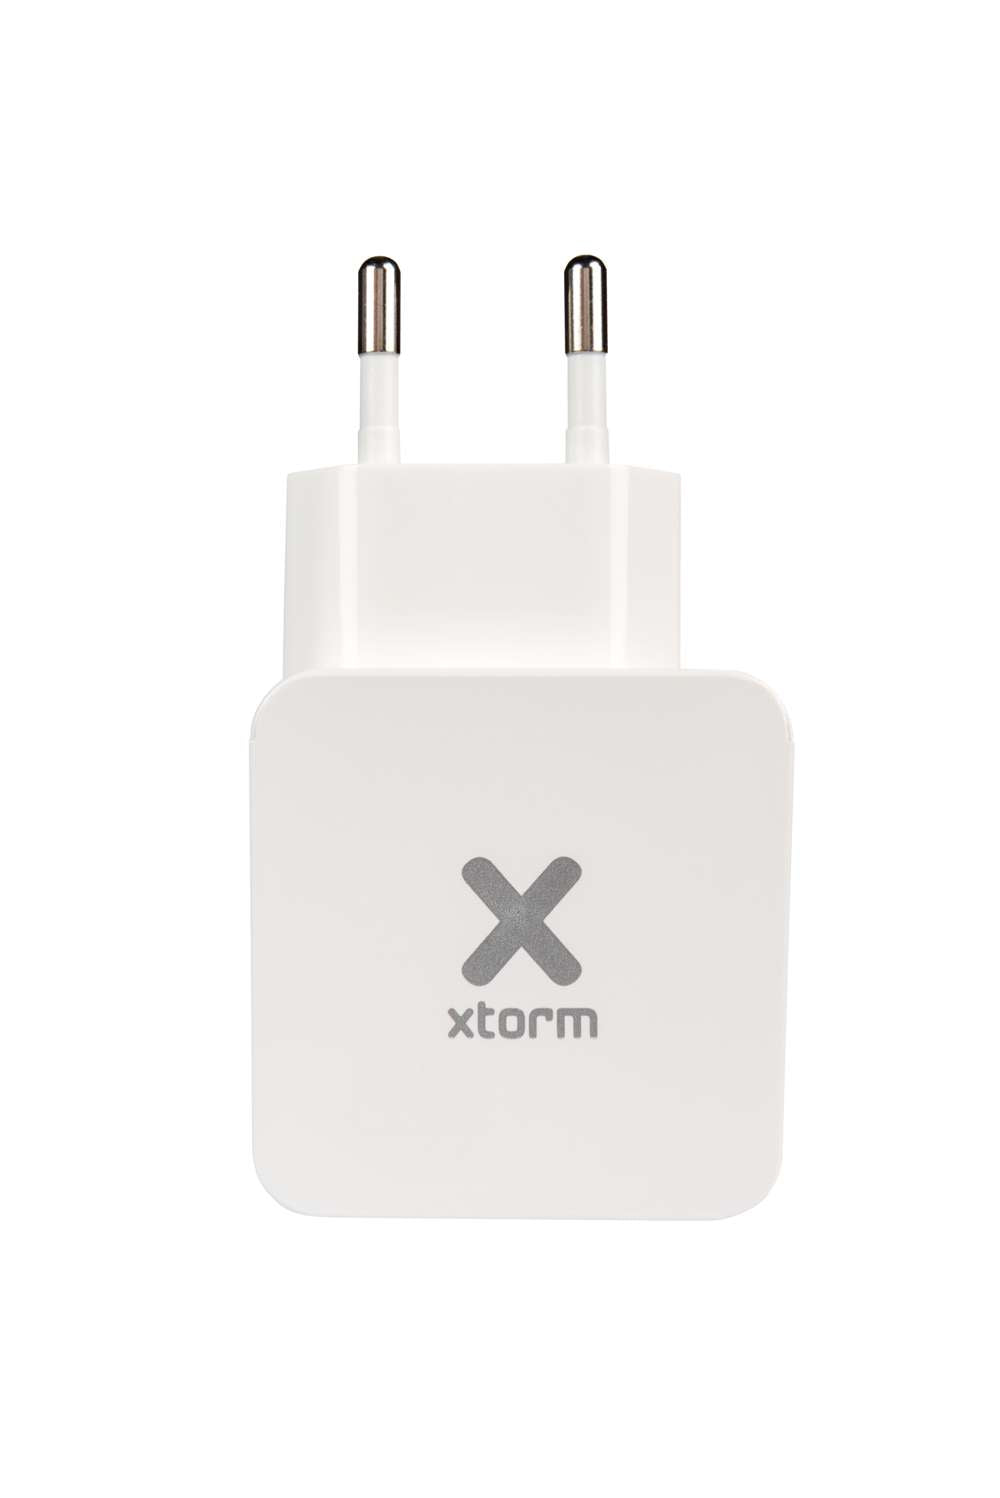 CX032 - Original 2 x USB AC Adapter + USB auf USB-C Kabel - Rot/Weiß